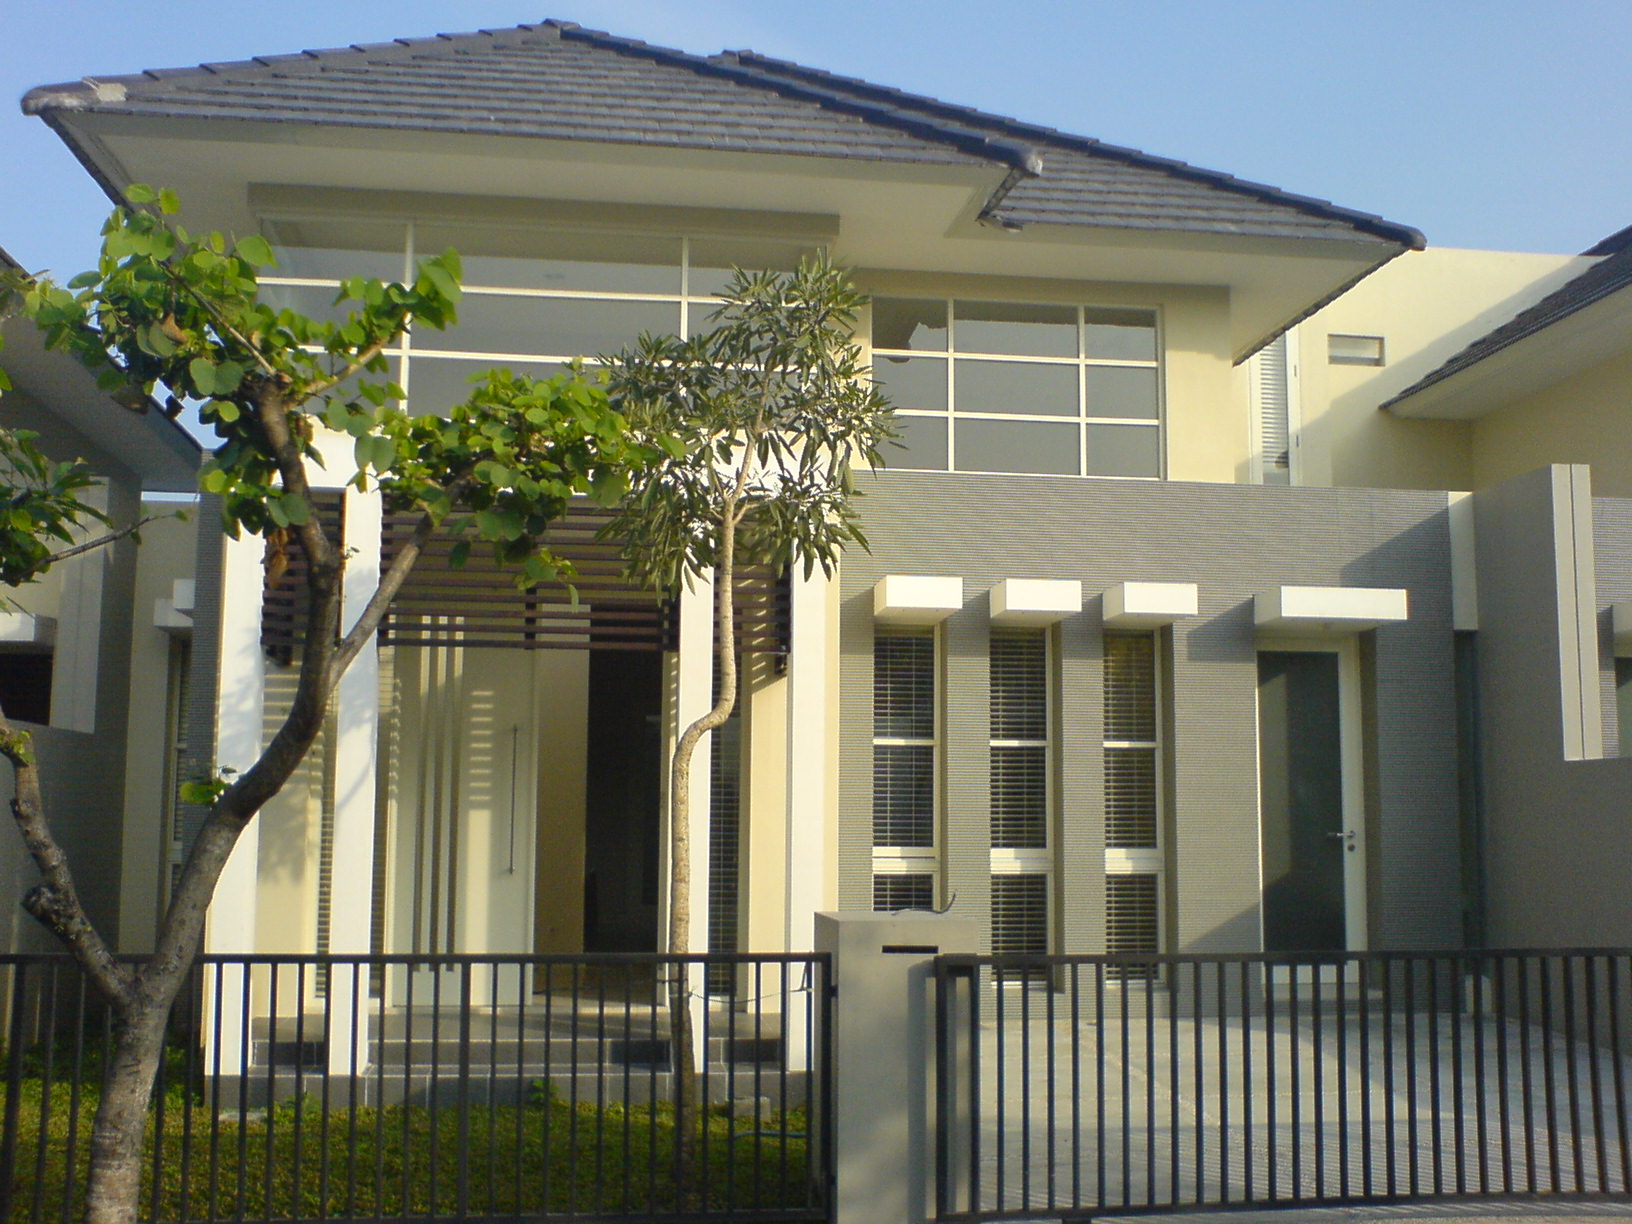  rumah baru, daerah elit RIVERSIDE Malang  rumah, tanah, apartemen